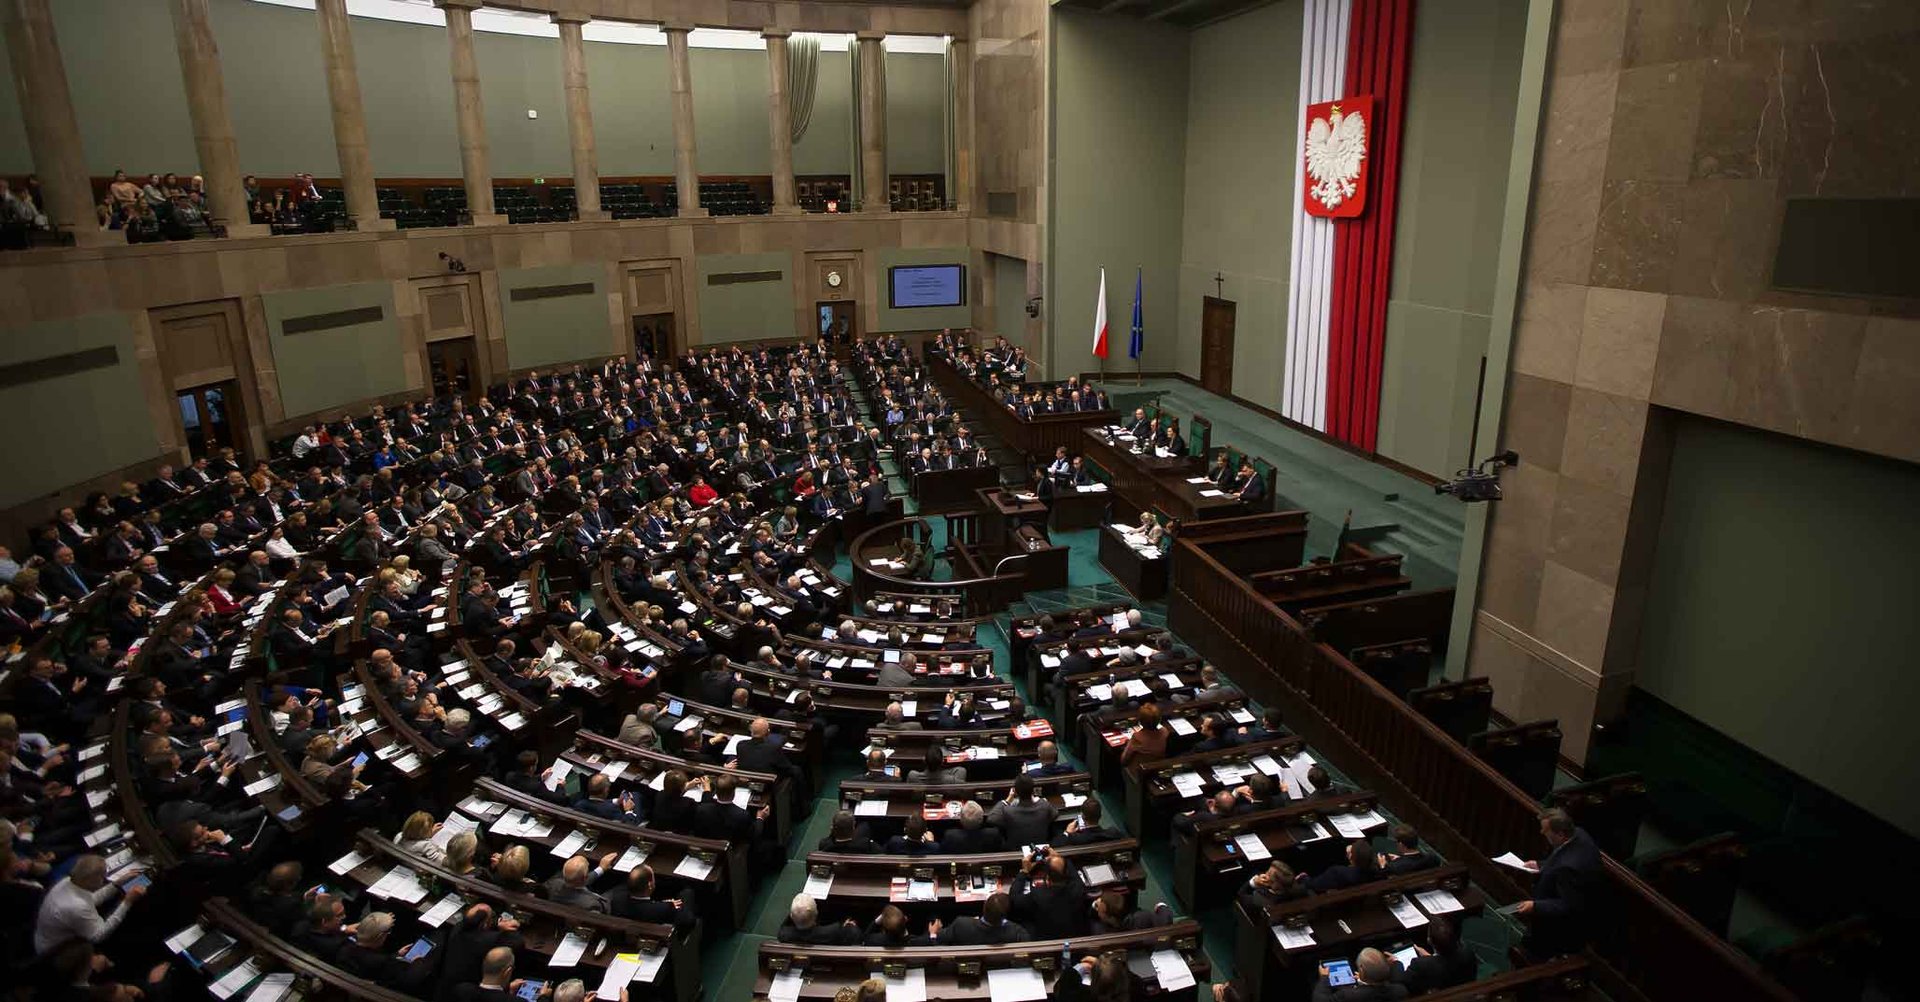 Podczas sesji zamykającej posiedzenie Zgromadzenia Parlamentarnego OBWE w Sejmie, zgaszono wszystkie światła.